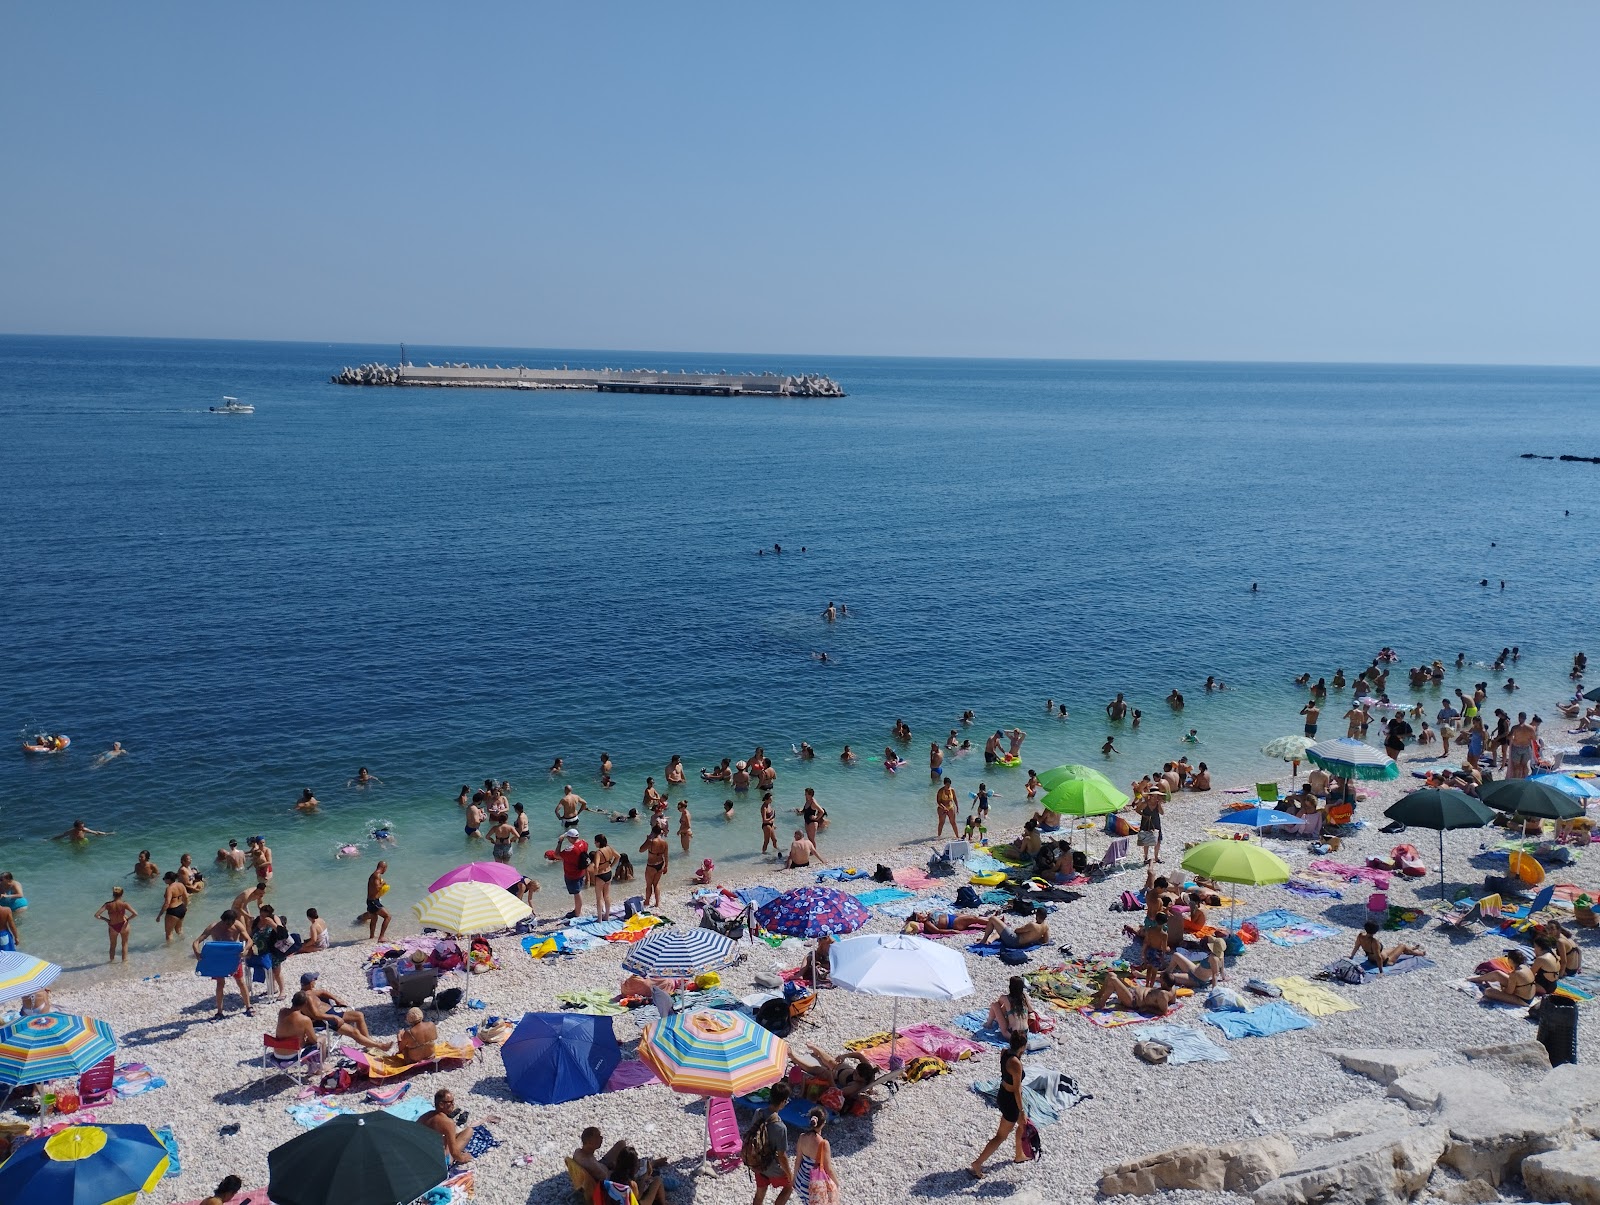 Spiaggia del Macello'in fotoğrafı geniş plaj ile birlikte